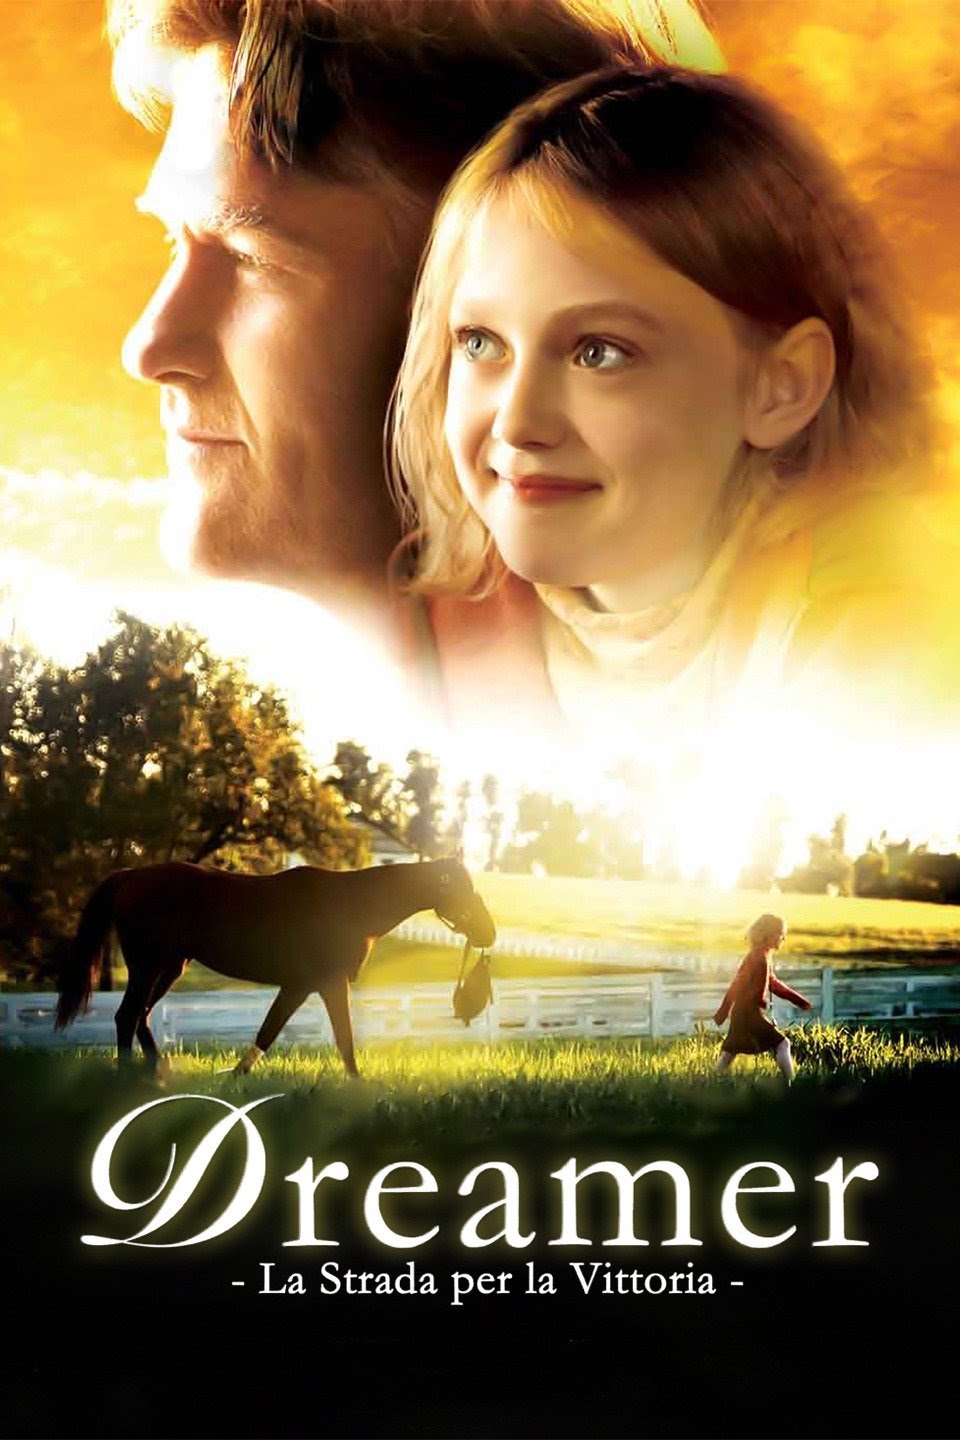 Dreamer – La strada per la vittoria [HD] (2005)